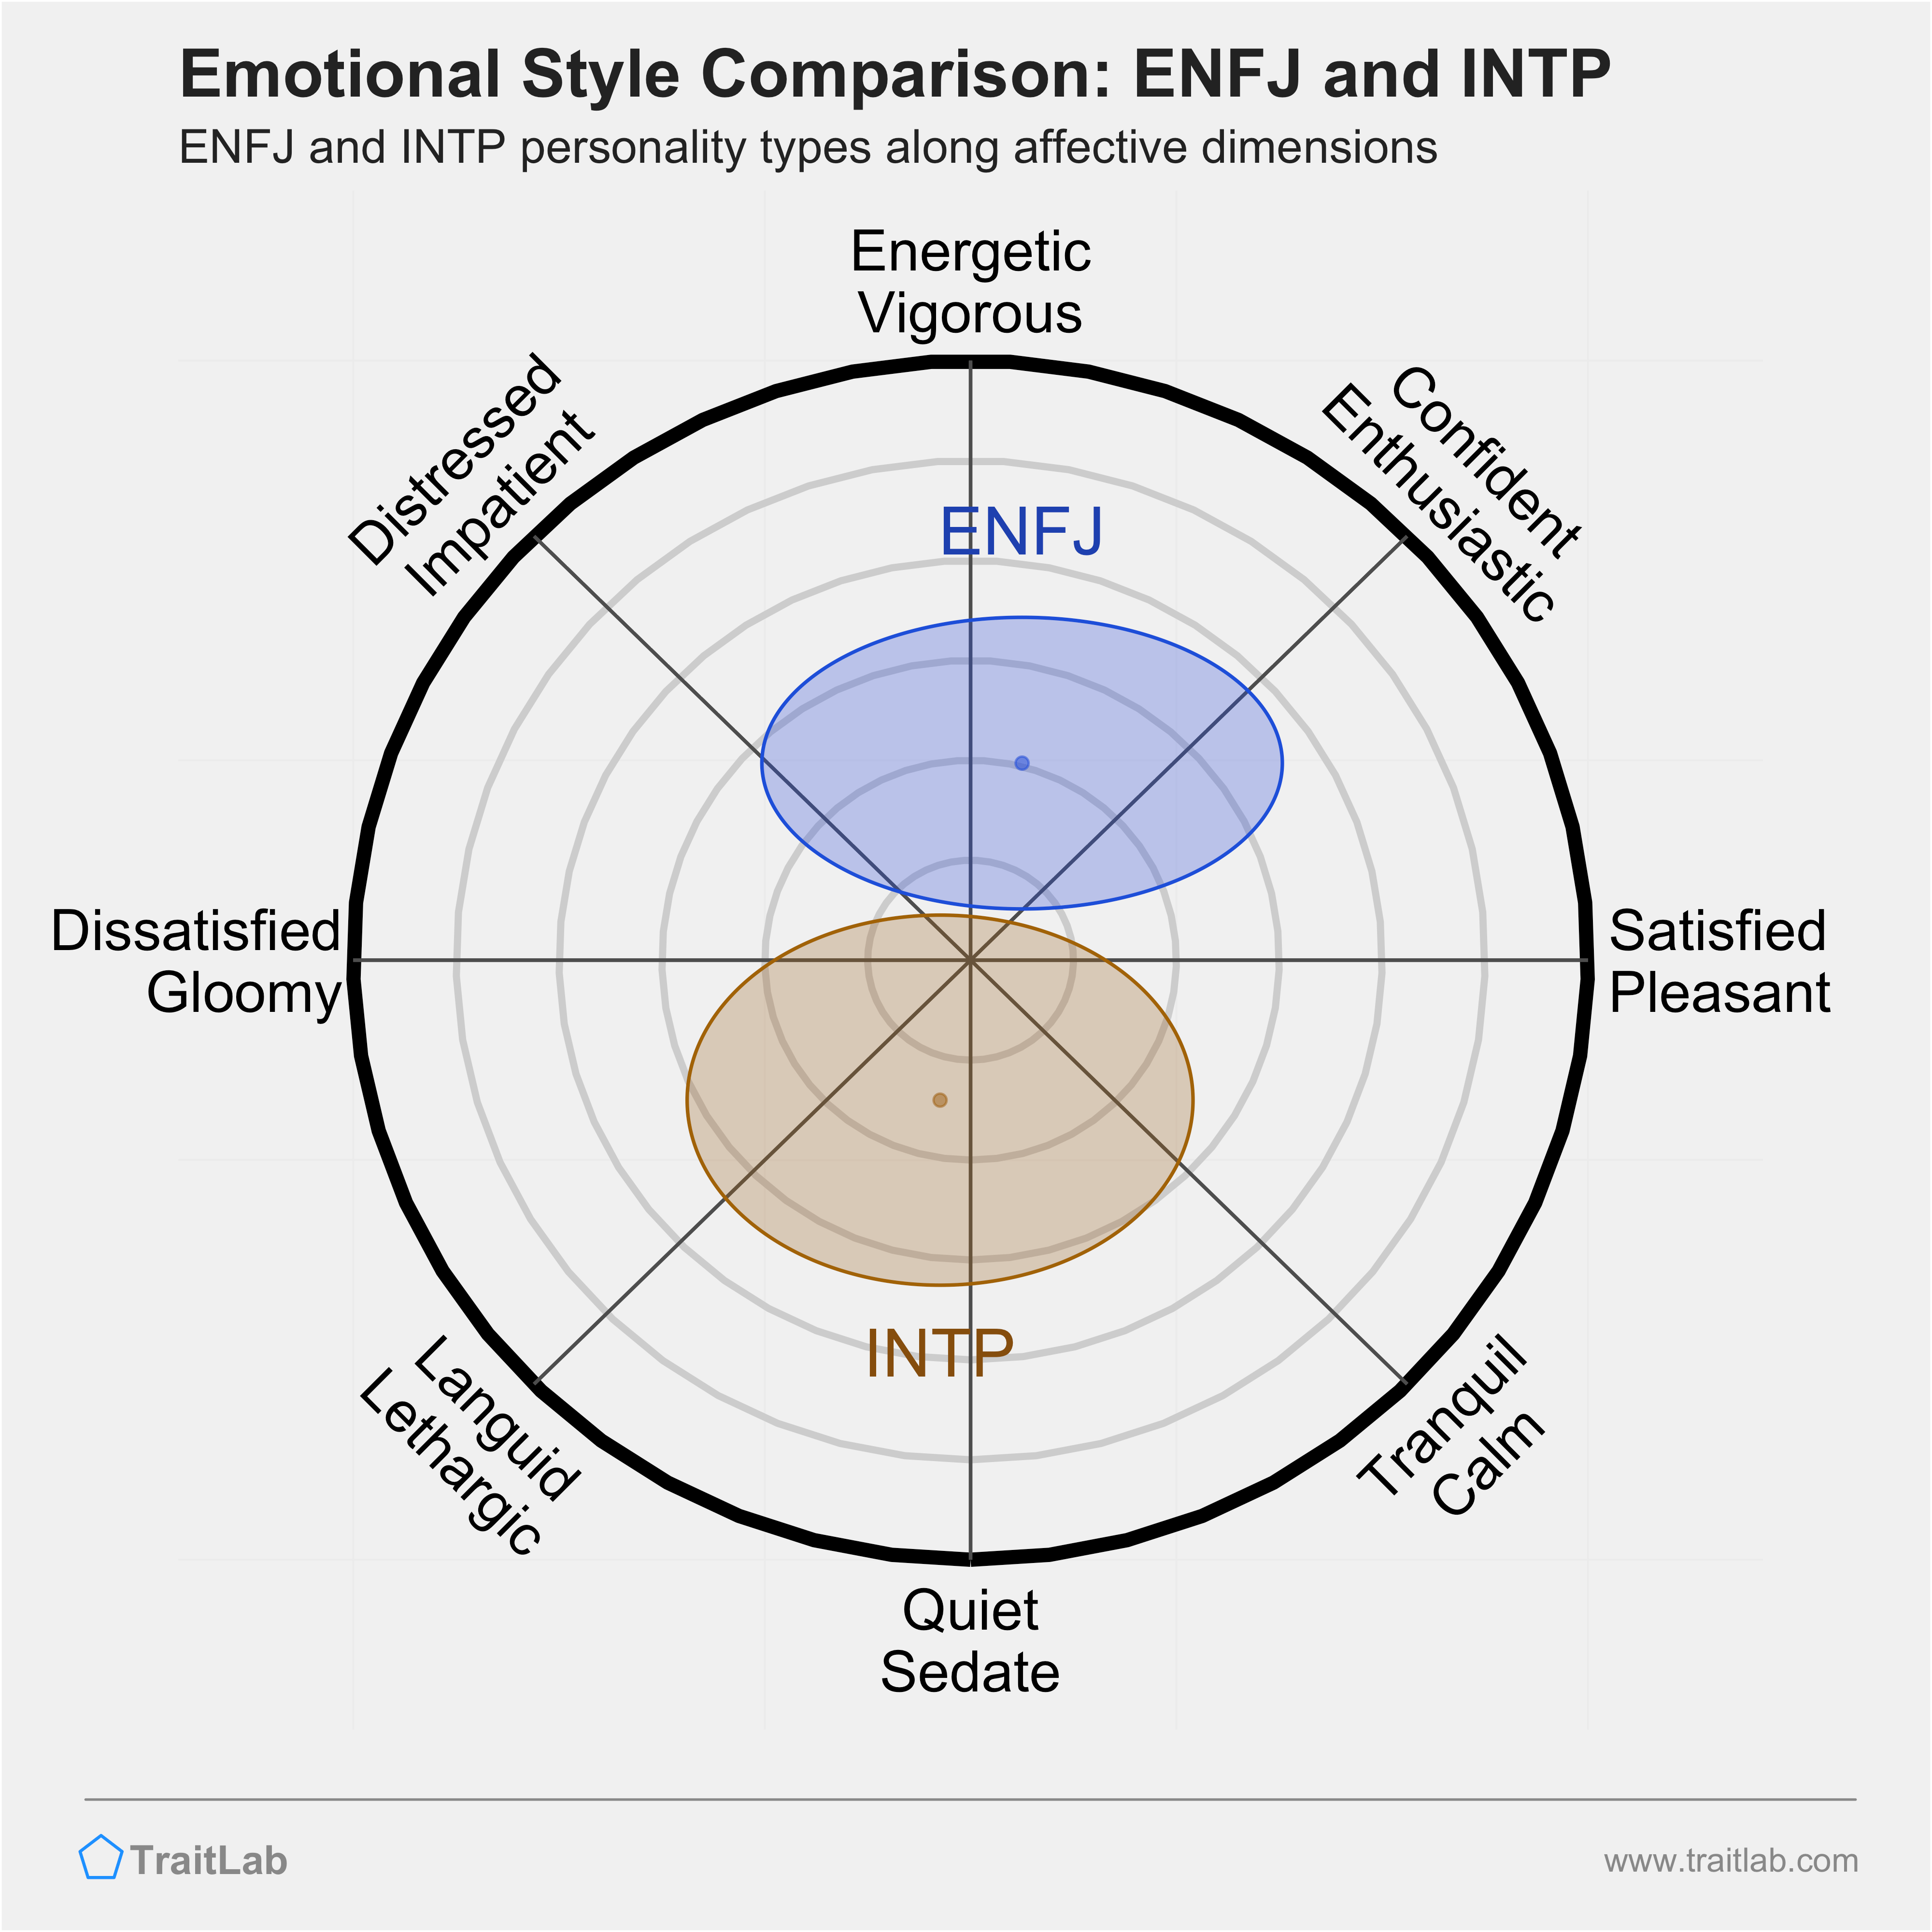 ENFJ and INTP comparison across emotional (affective) dimensions